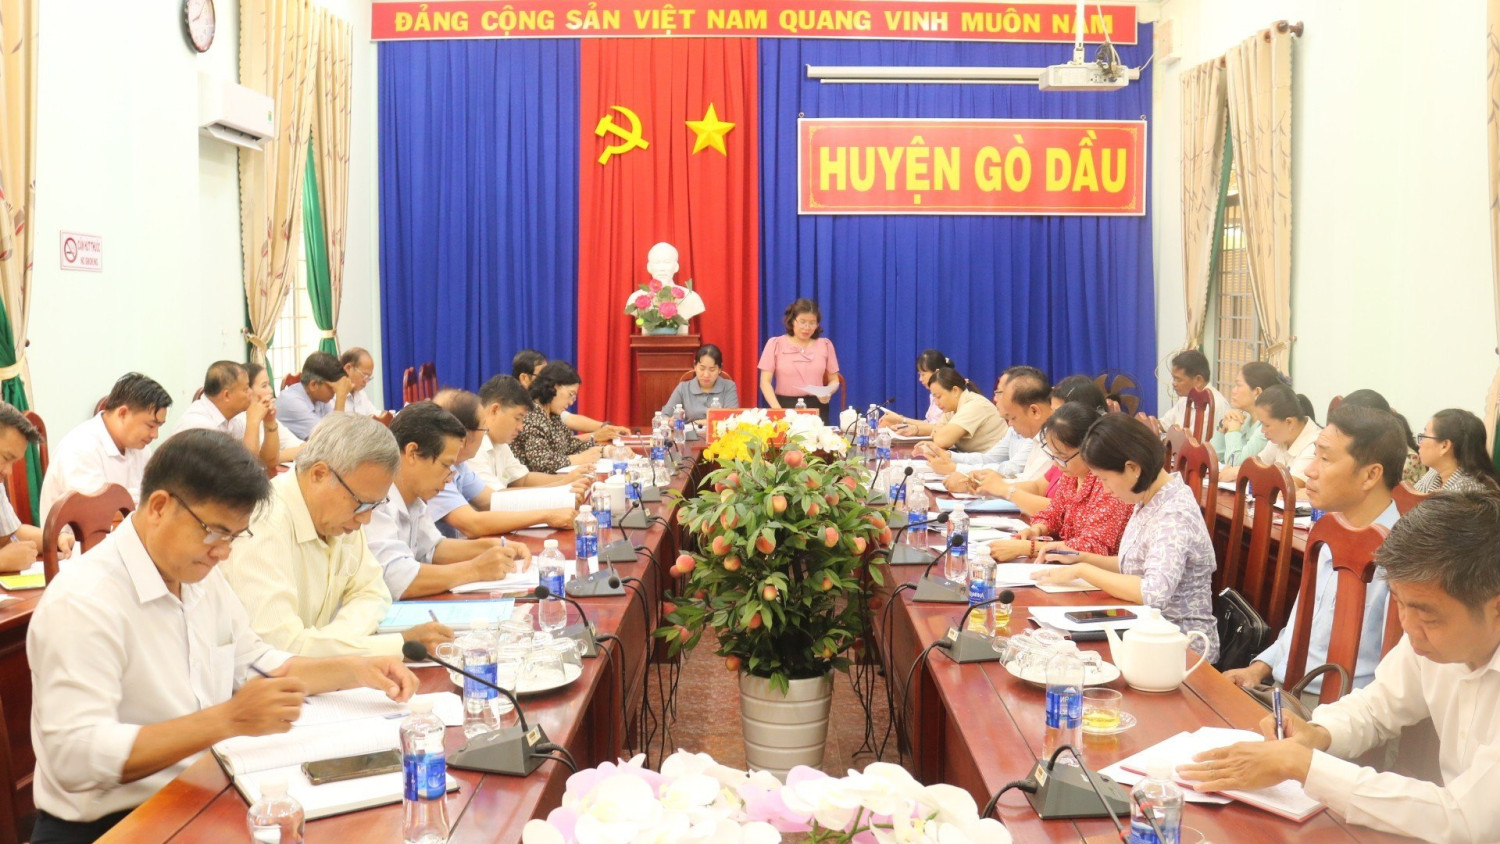 HĐND huyện Gò Dầu tổ chức Hội nghị giải trình quản lý nhà nước về hiệu quả hoạt động Nhà văn hoá ấp, liên ấp trên địa bàn huyện.